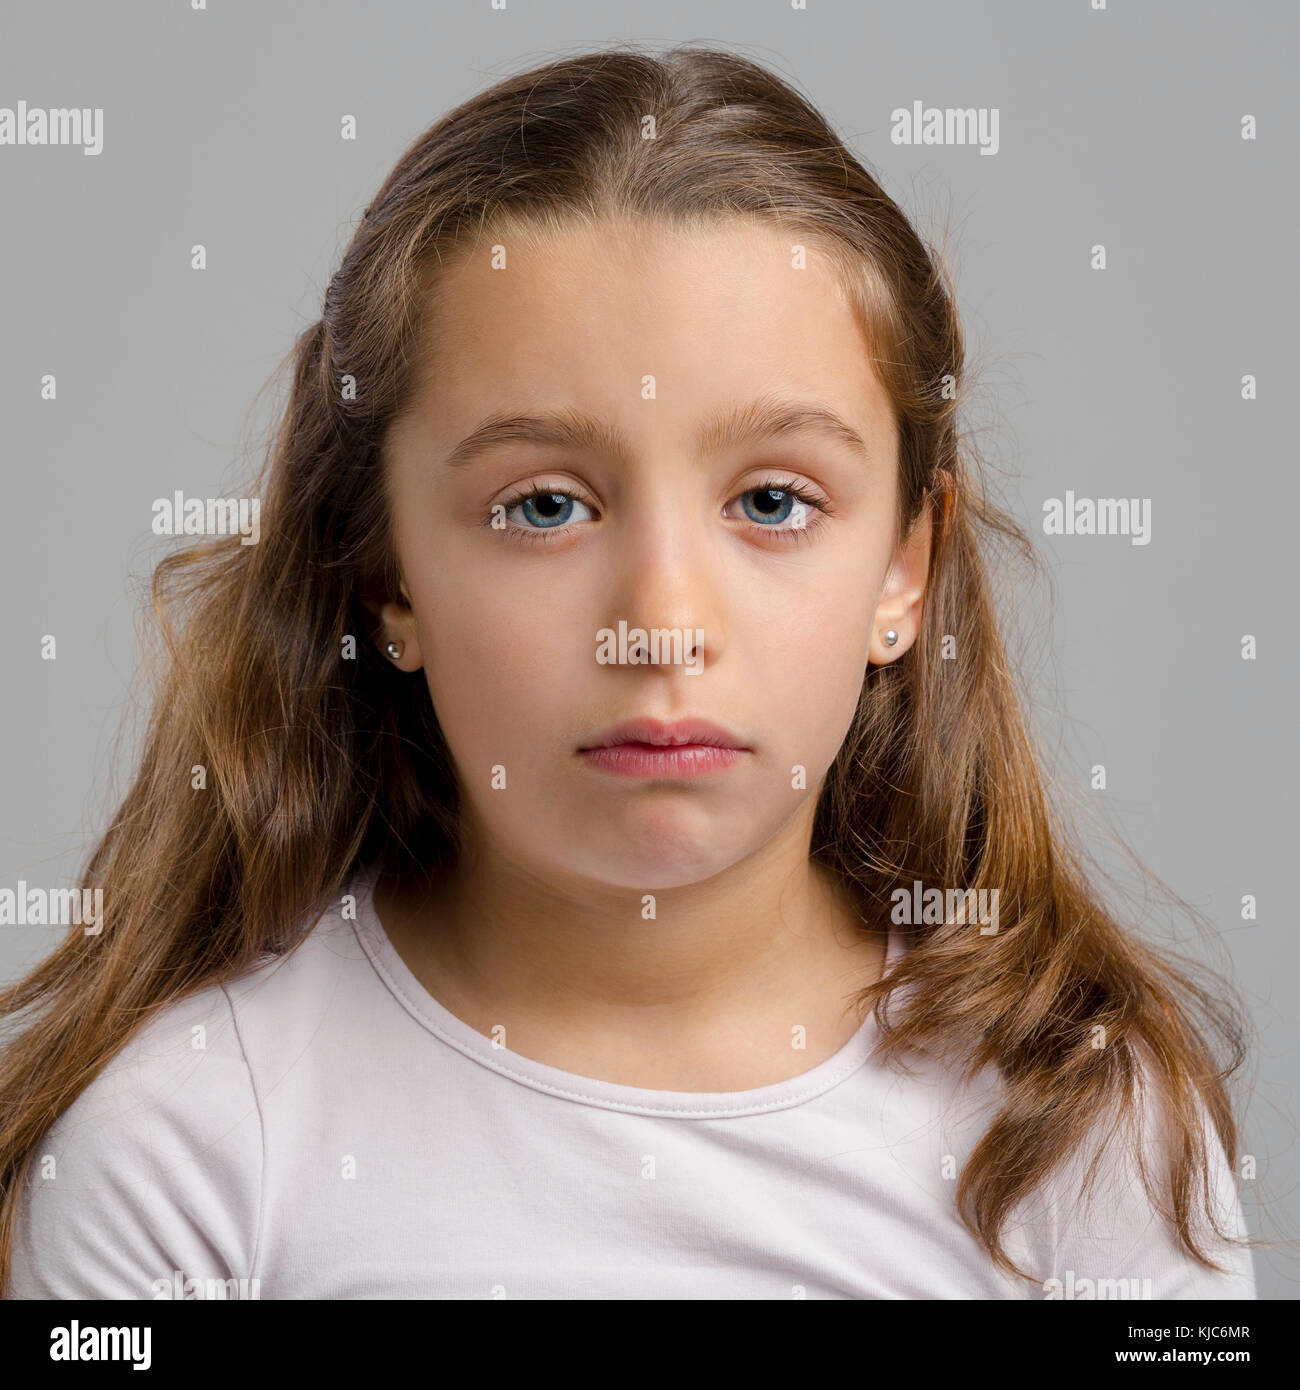 Ritratto di una bambina facendo un espressione triste Foto Stock